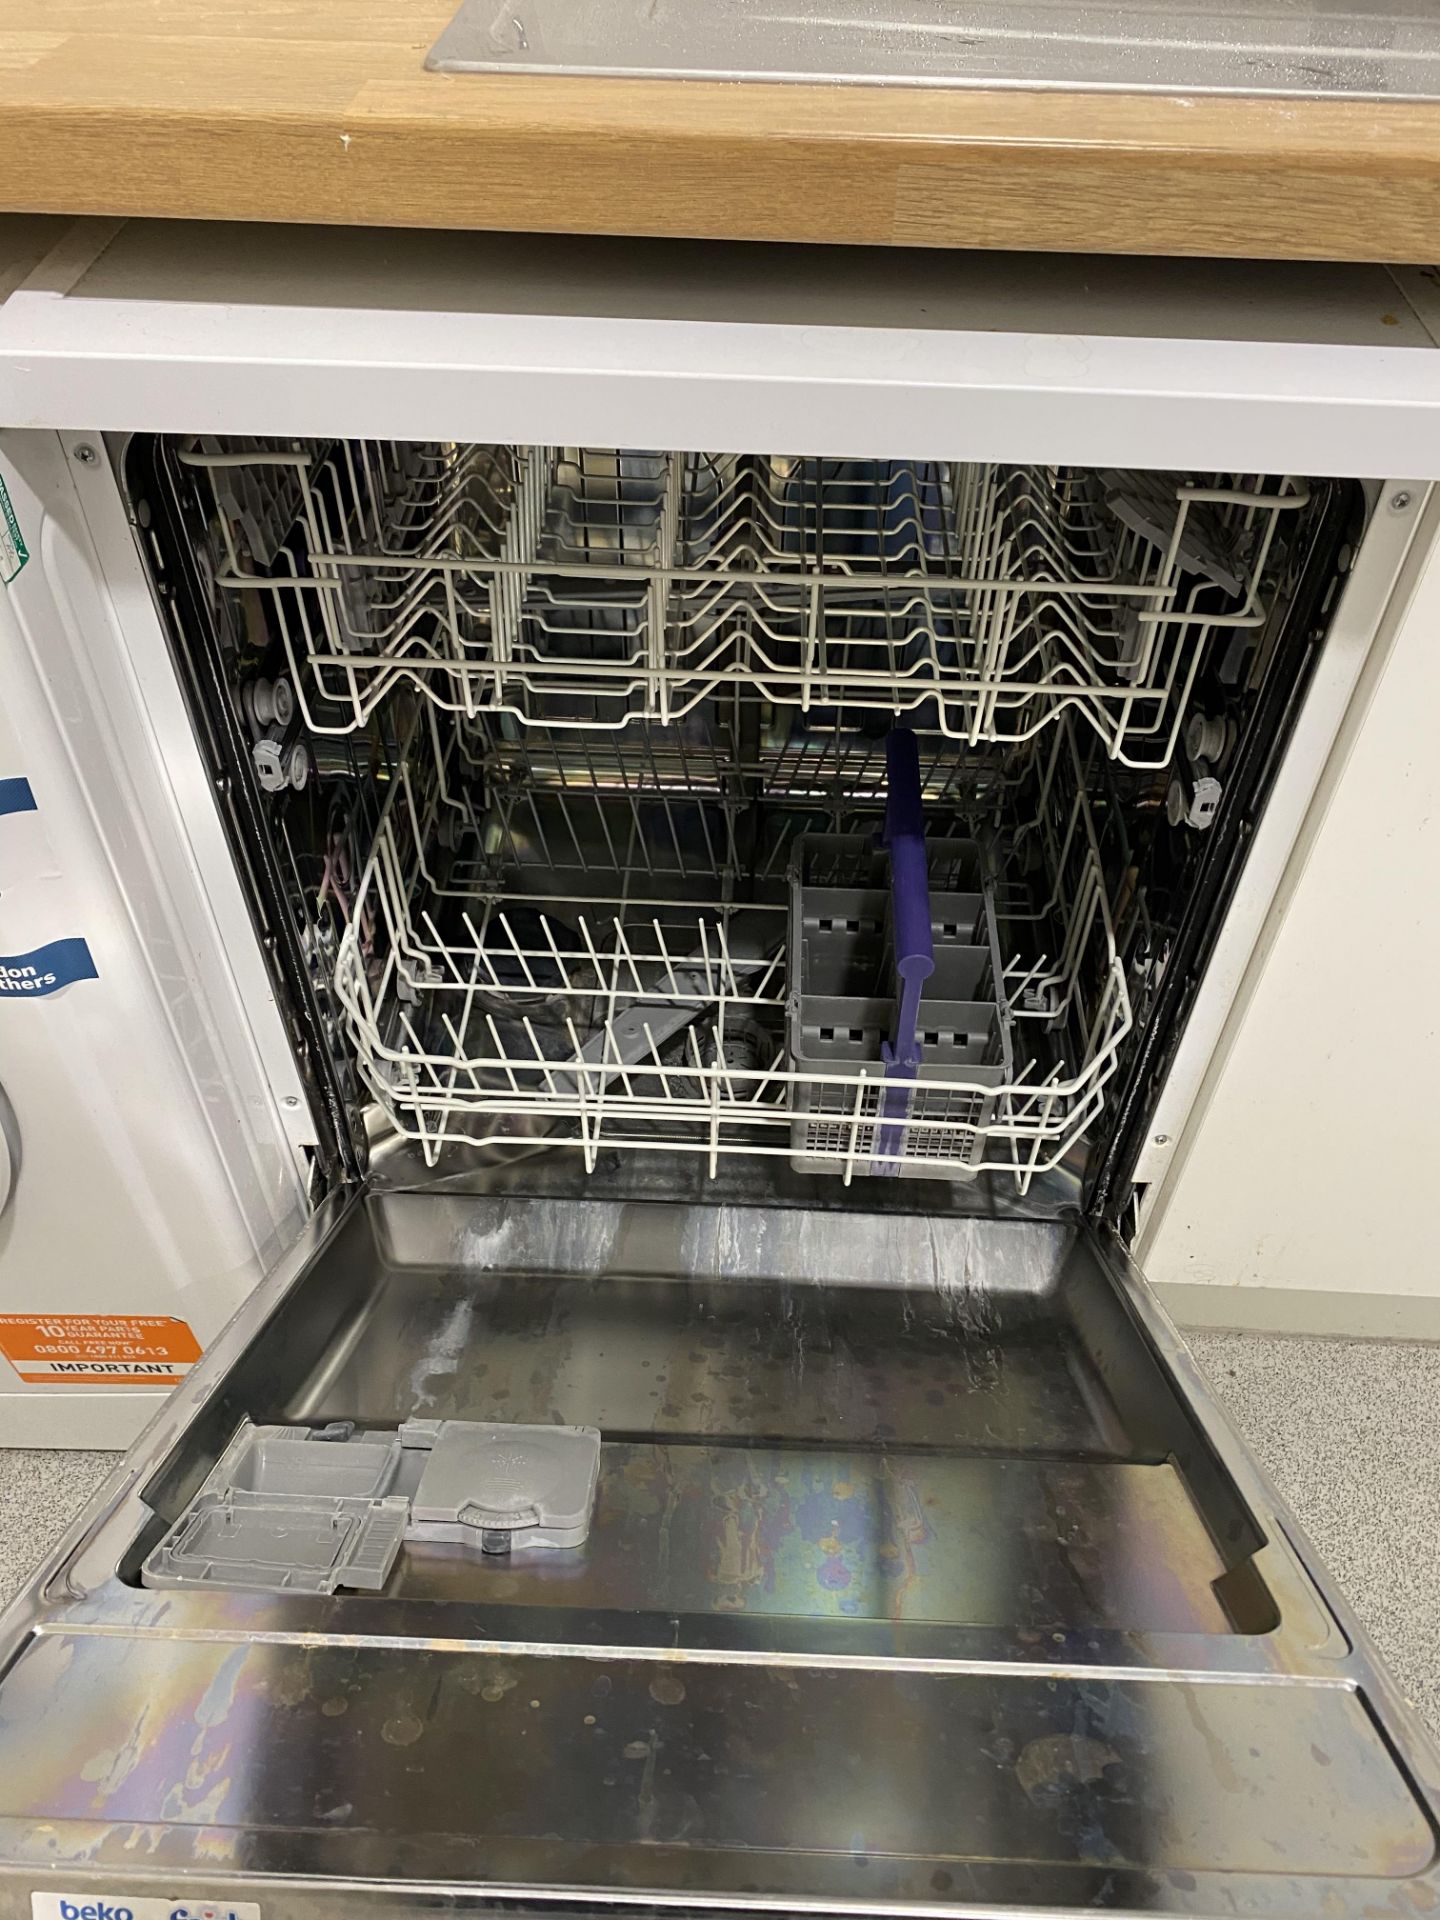 Indesit 1WDC6125 washing machine, Beko ARTIO dishwasher and Fridgemaster tall larder fridge - - Image 3 of 4